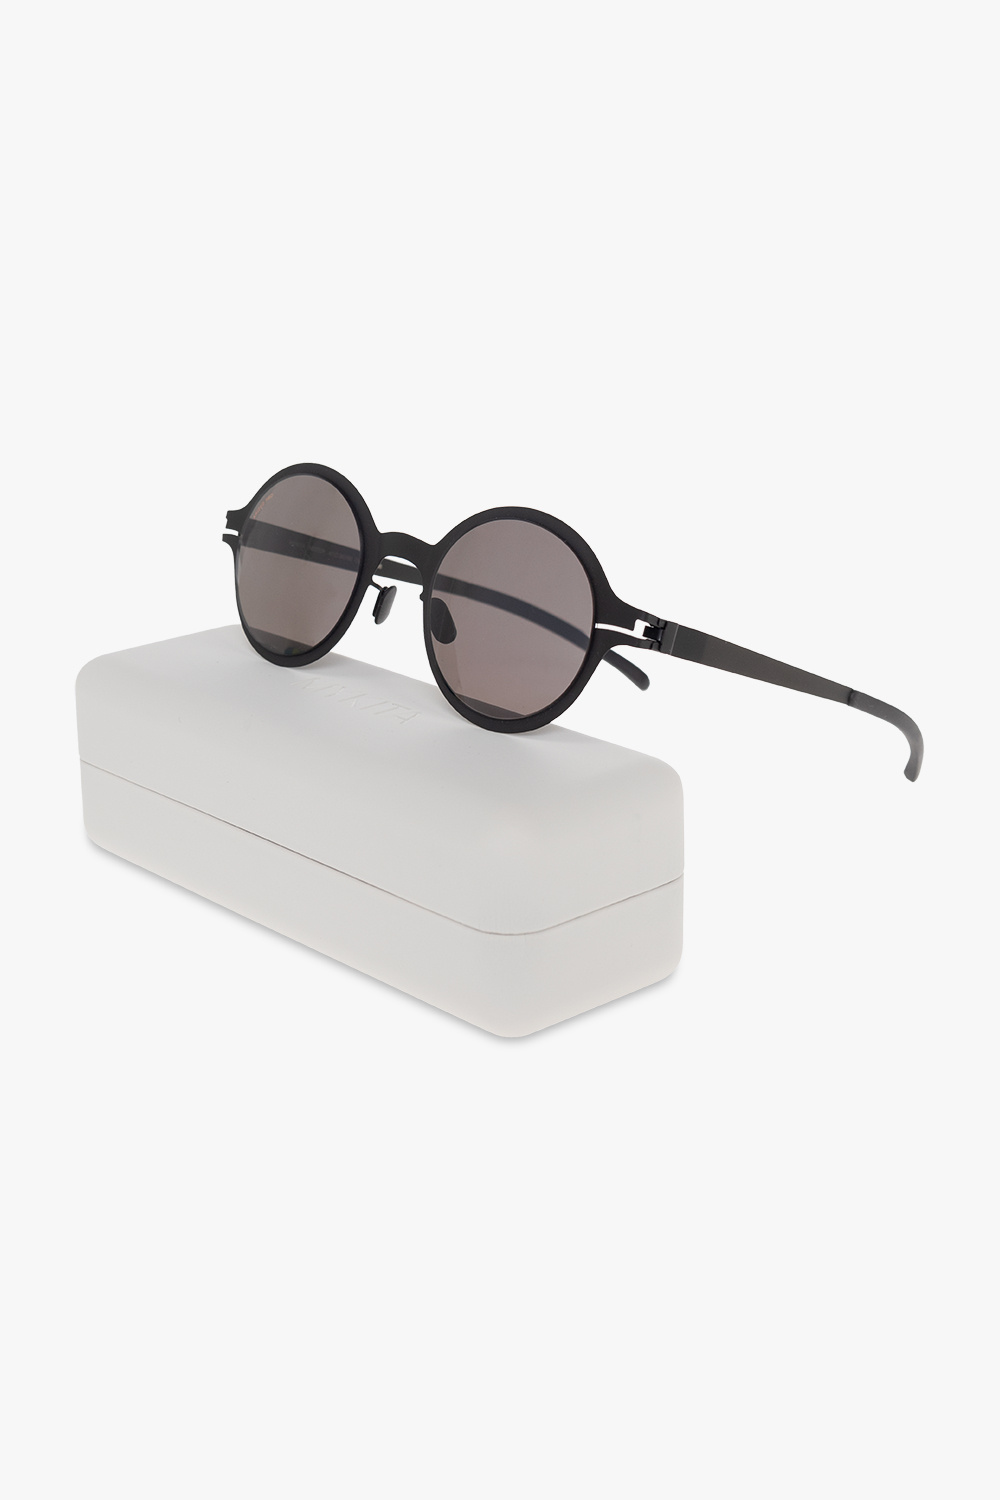 Mykita ‘Nestor’ sunglasses